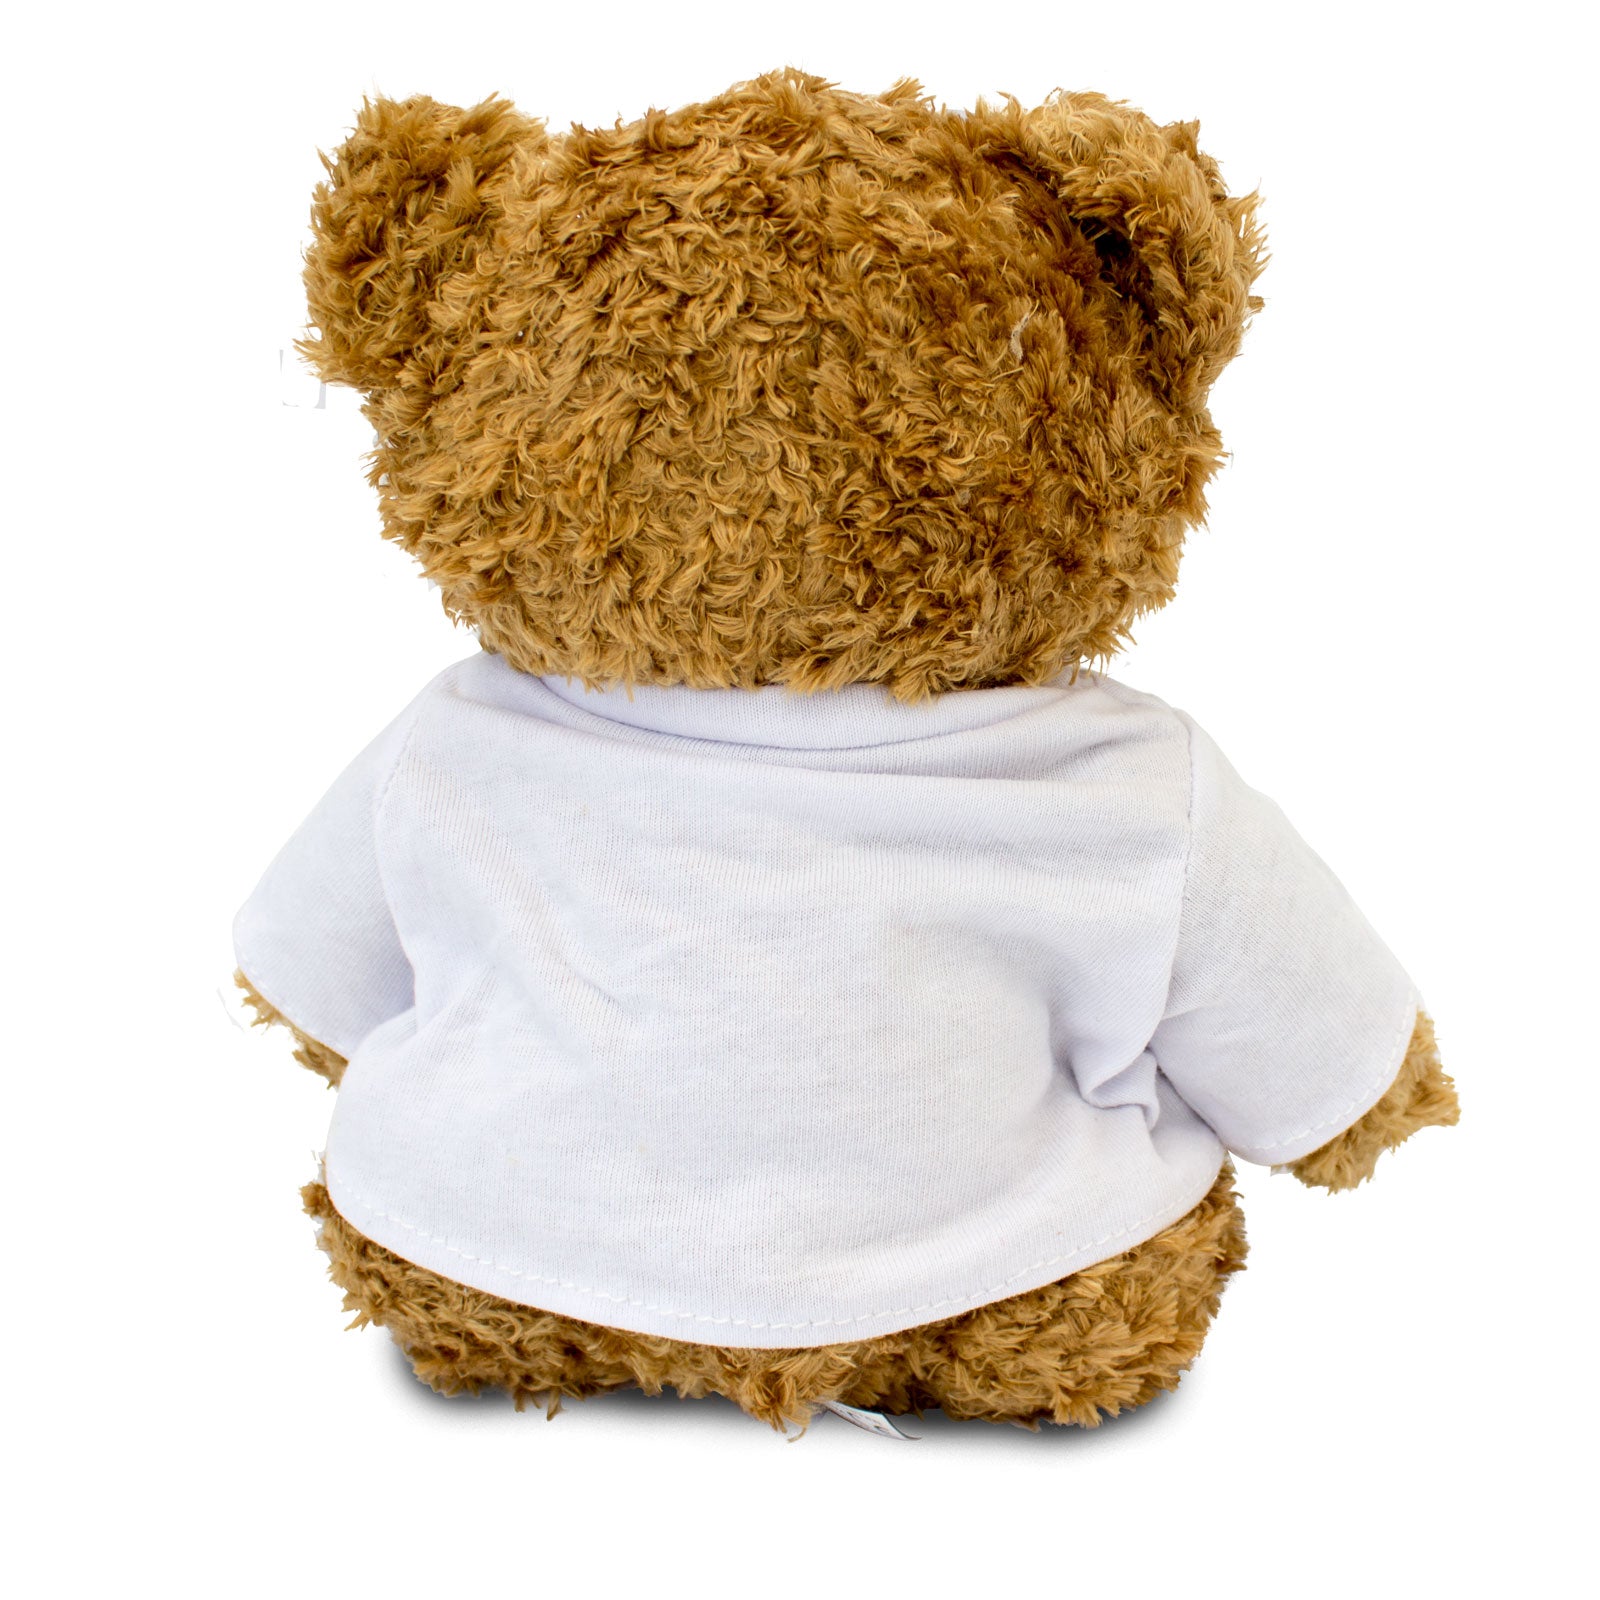 Get Well Soon Aisia - Teddy Bear